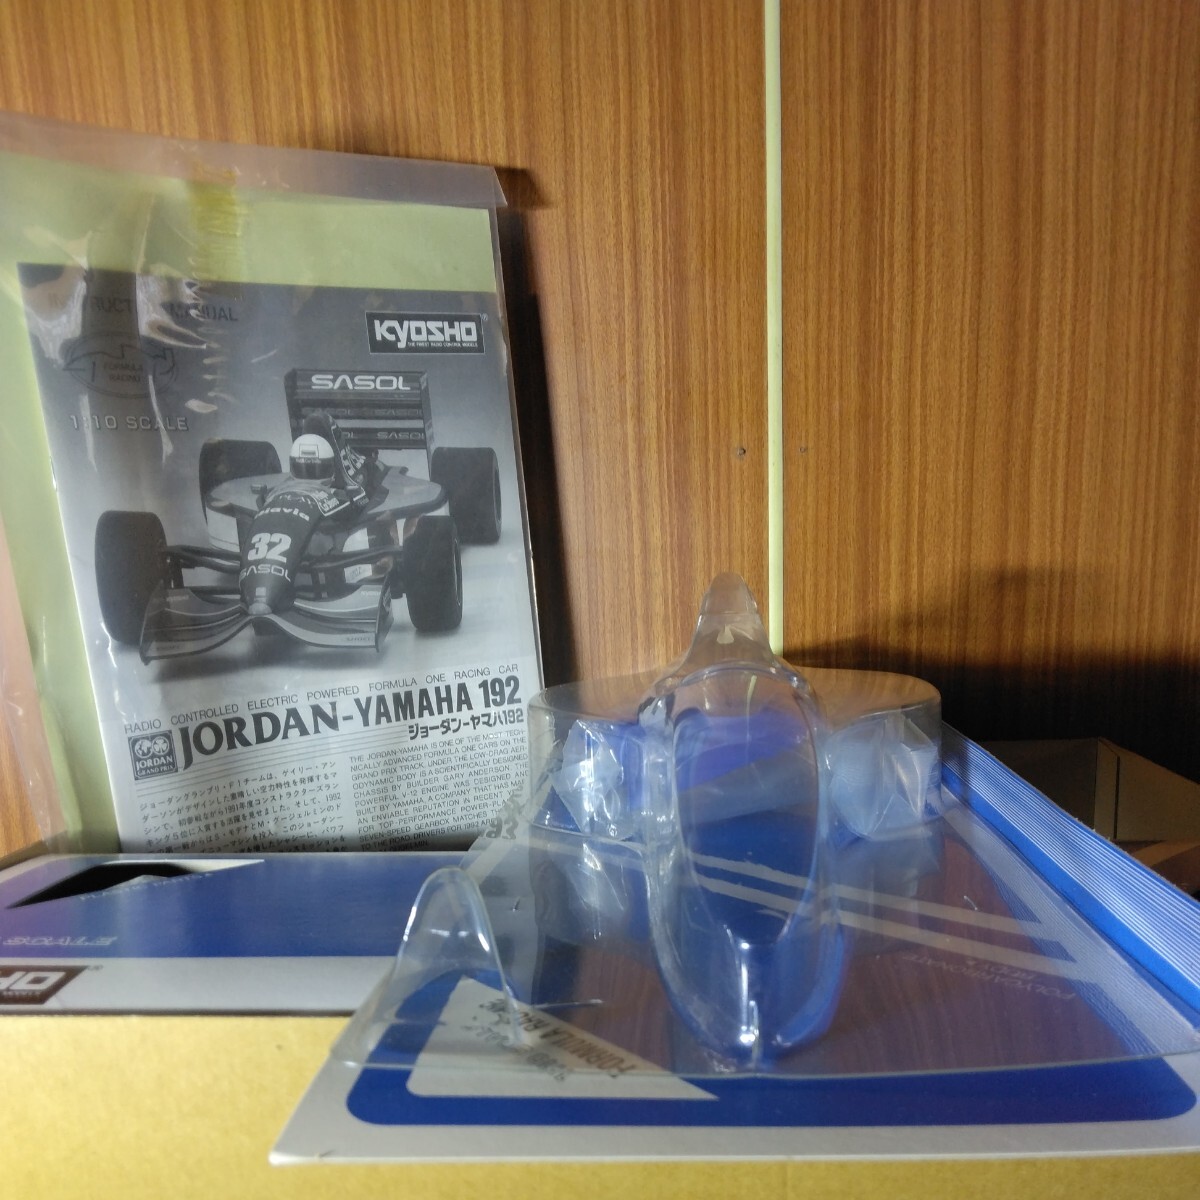  radio-controller kit ( Kyosho JORDAN YAMAHA 192 FORMULA RACING 1/10 EP electric Kyosho Jordan - Yamaha )